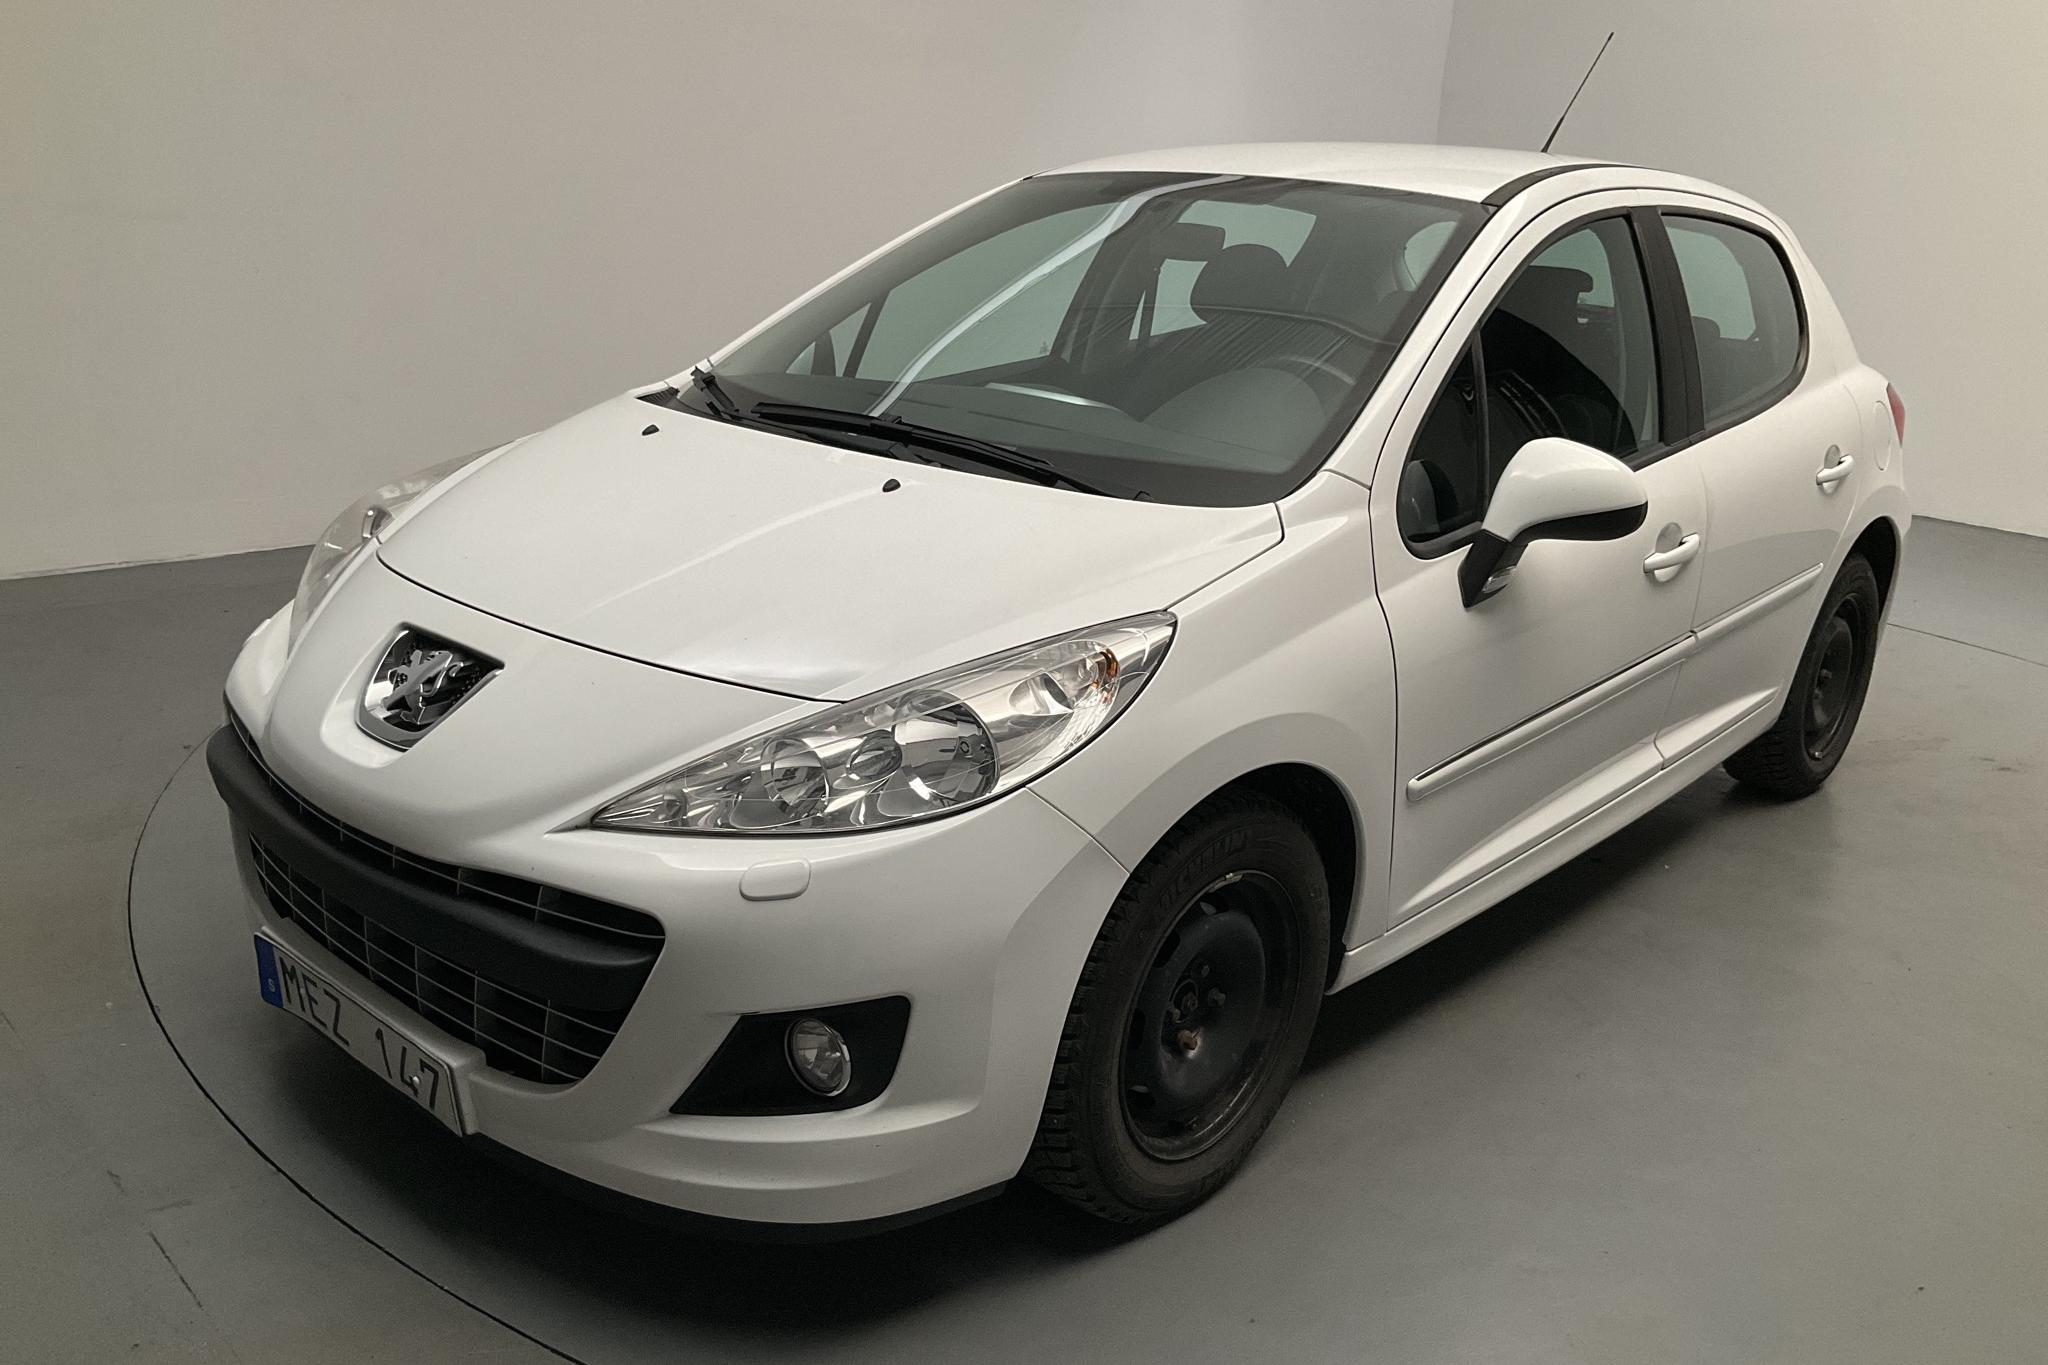 Peugeot 207 1.4 VTi 5dr (95hk) - 72 880 km - Manual - white - 2011